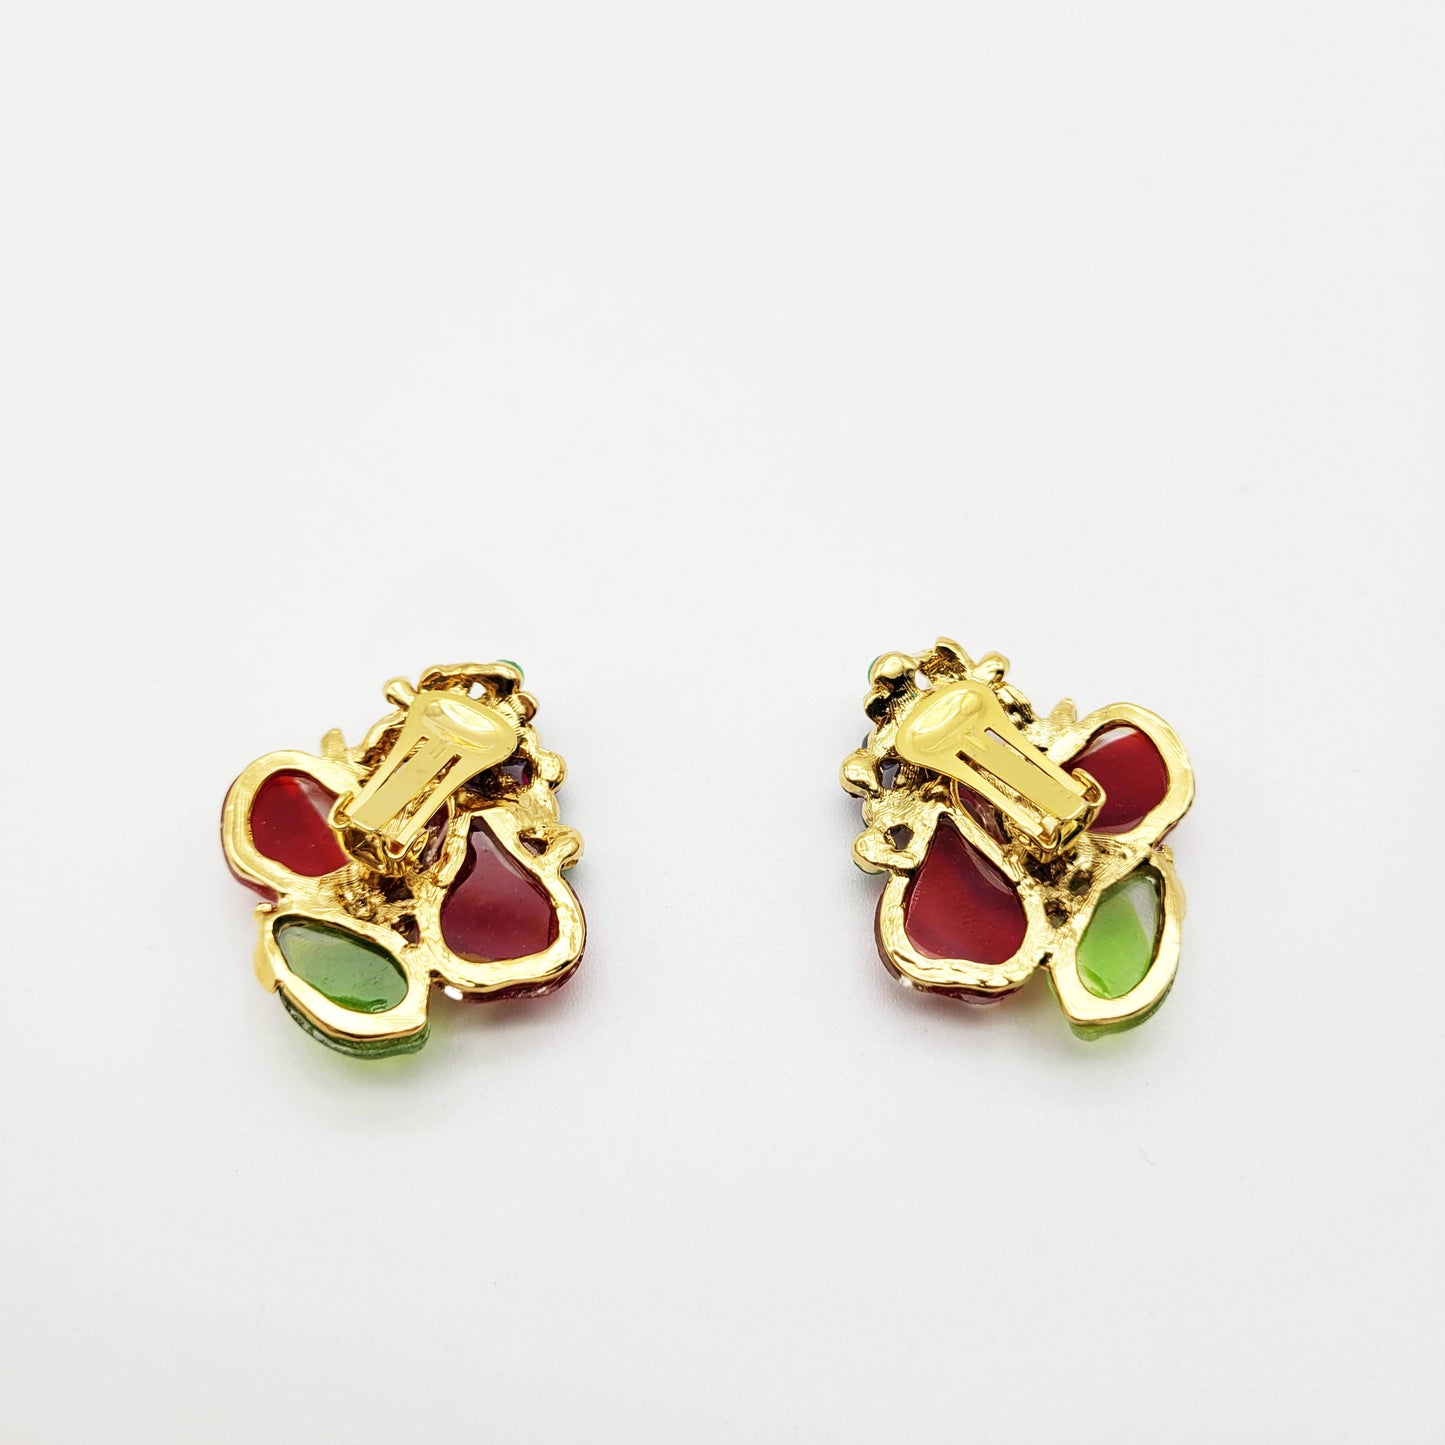 Vintage tutti frutti earrings